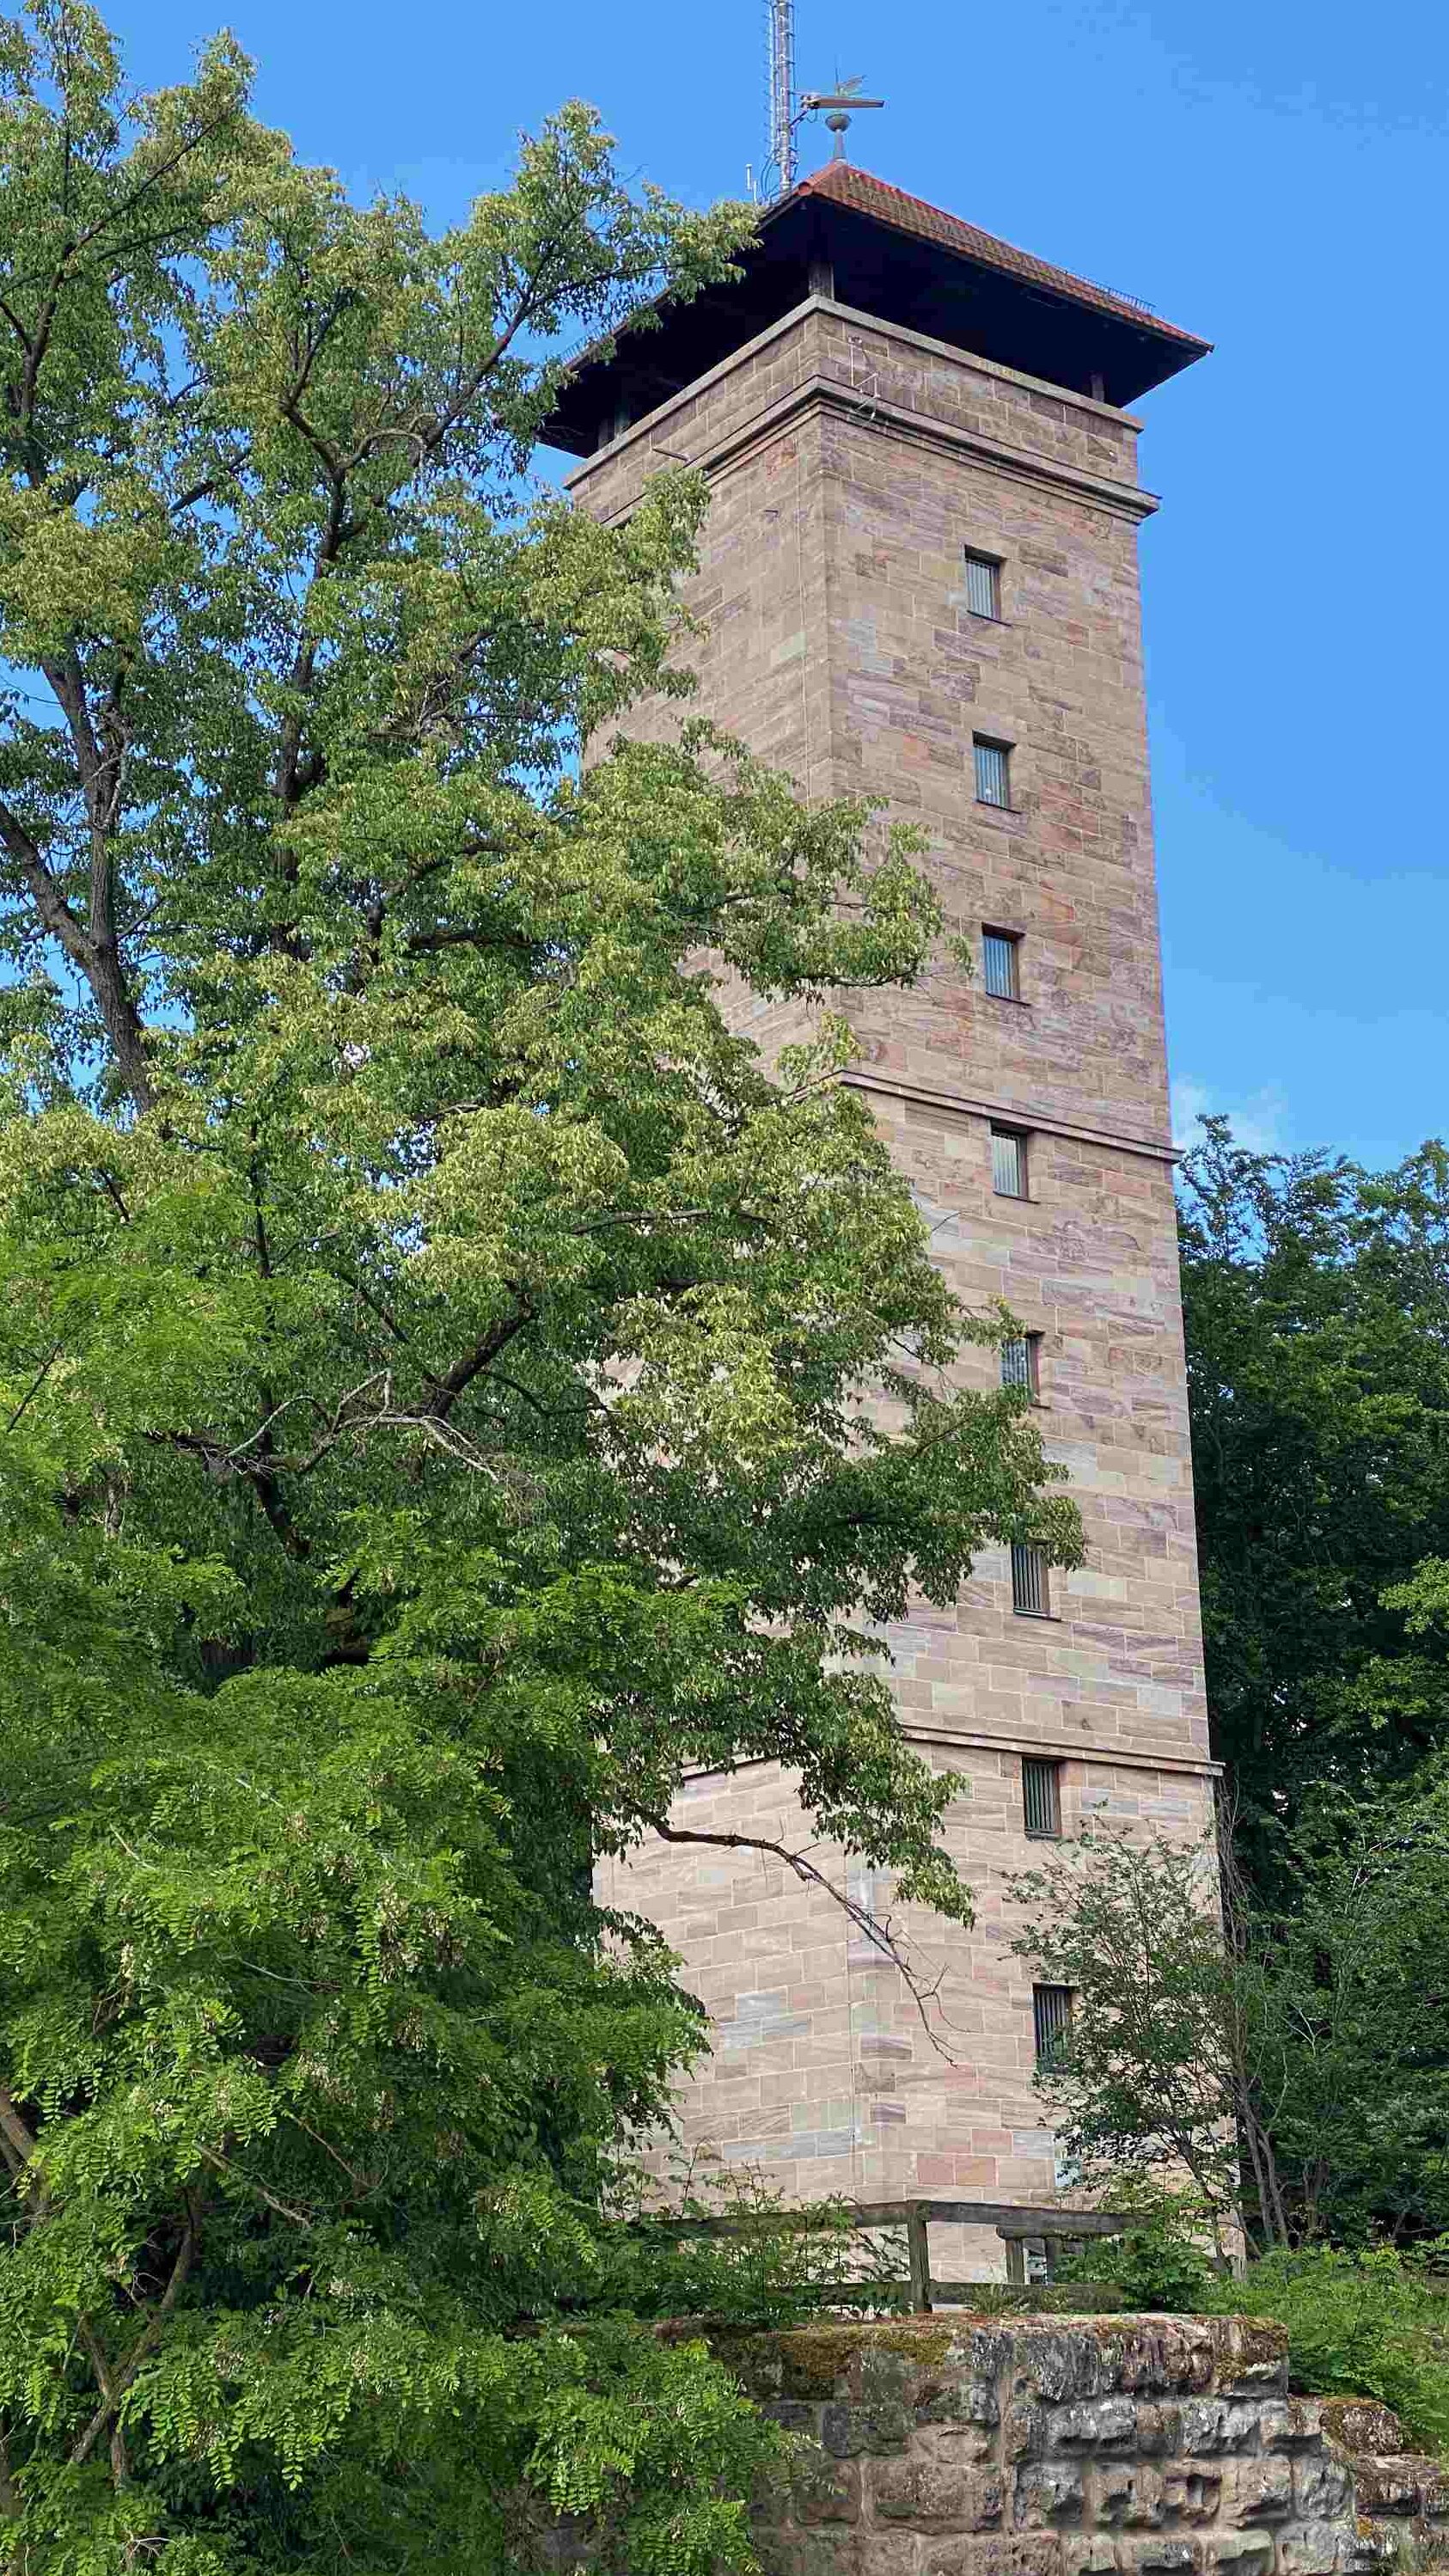 Turm der alten Veste hinter Baum